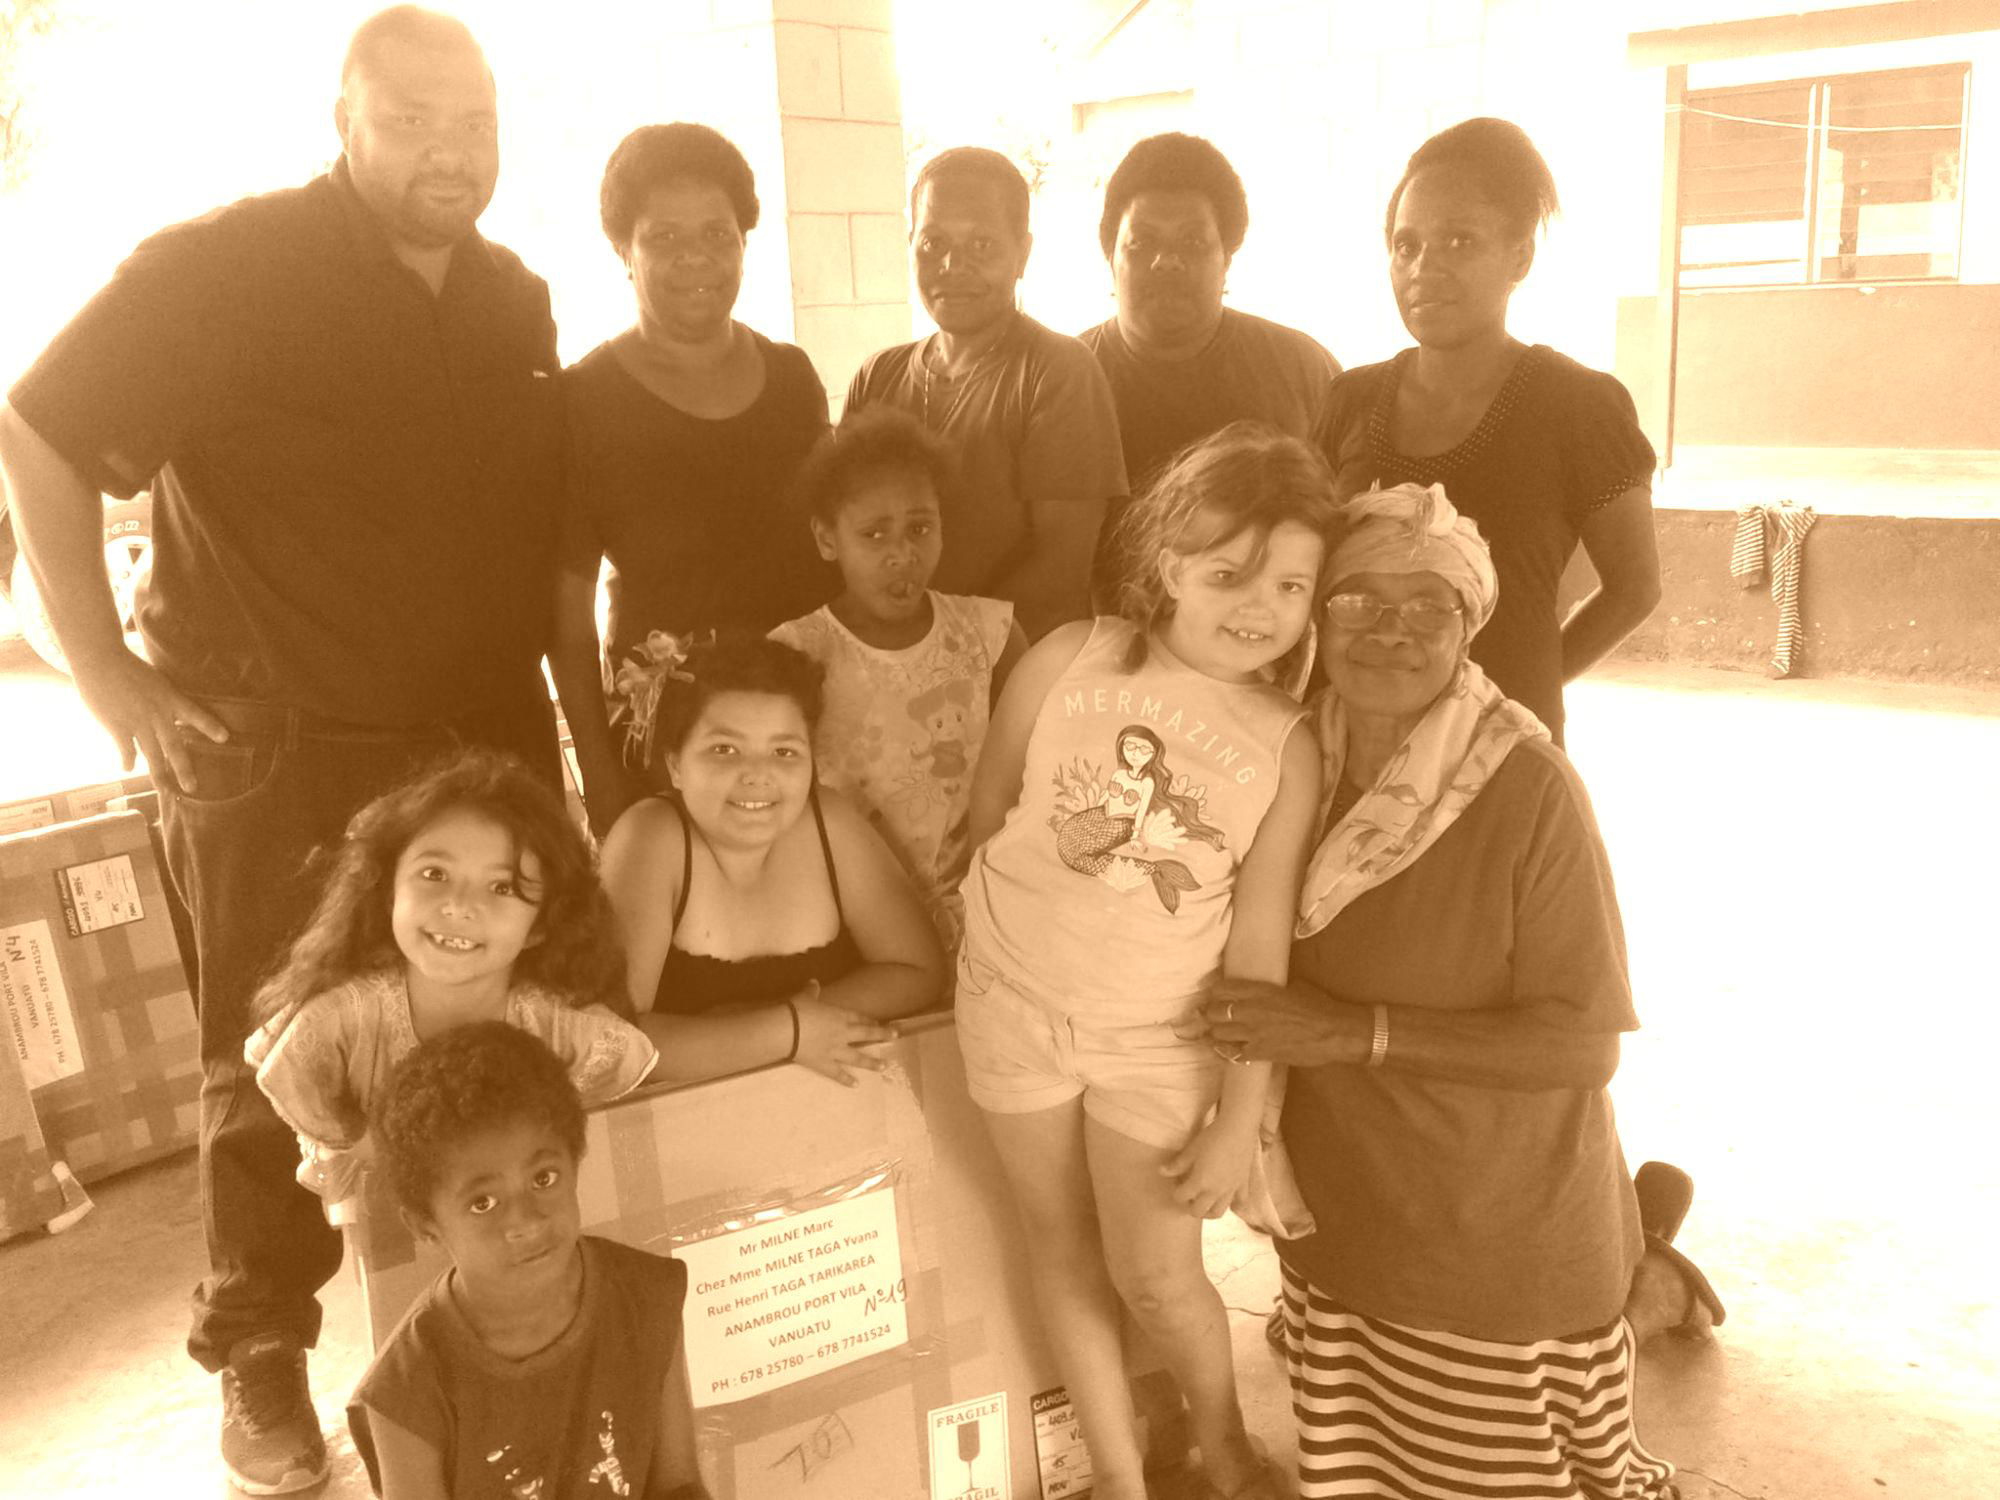 2019 - Don de matériel scolaire à l'École Notre Dame de Lourdes (Anambrou - Port-Vila)